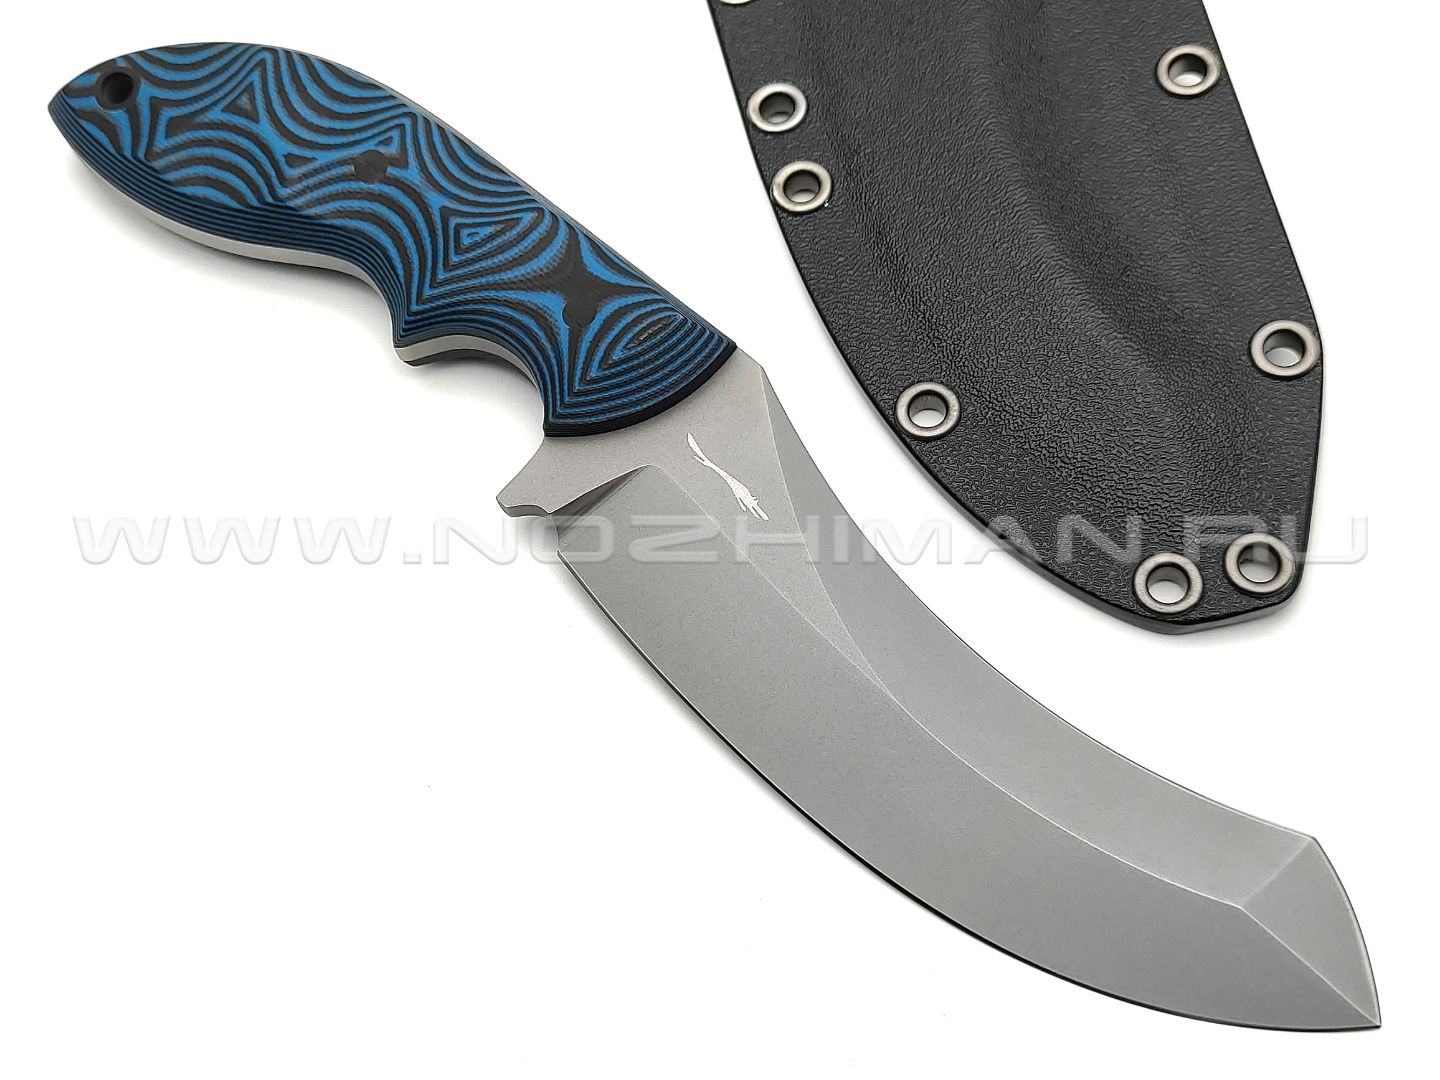 Волчий Век нож Кондрат 12 сталь 95х18 WA bead-blast, рукоять G10 black & blue